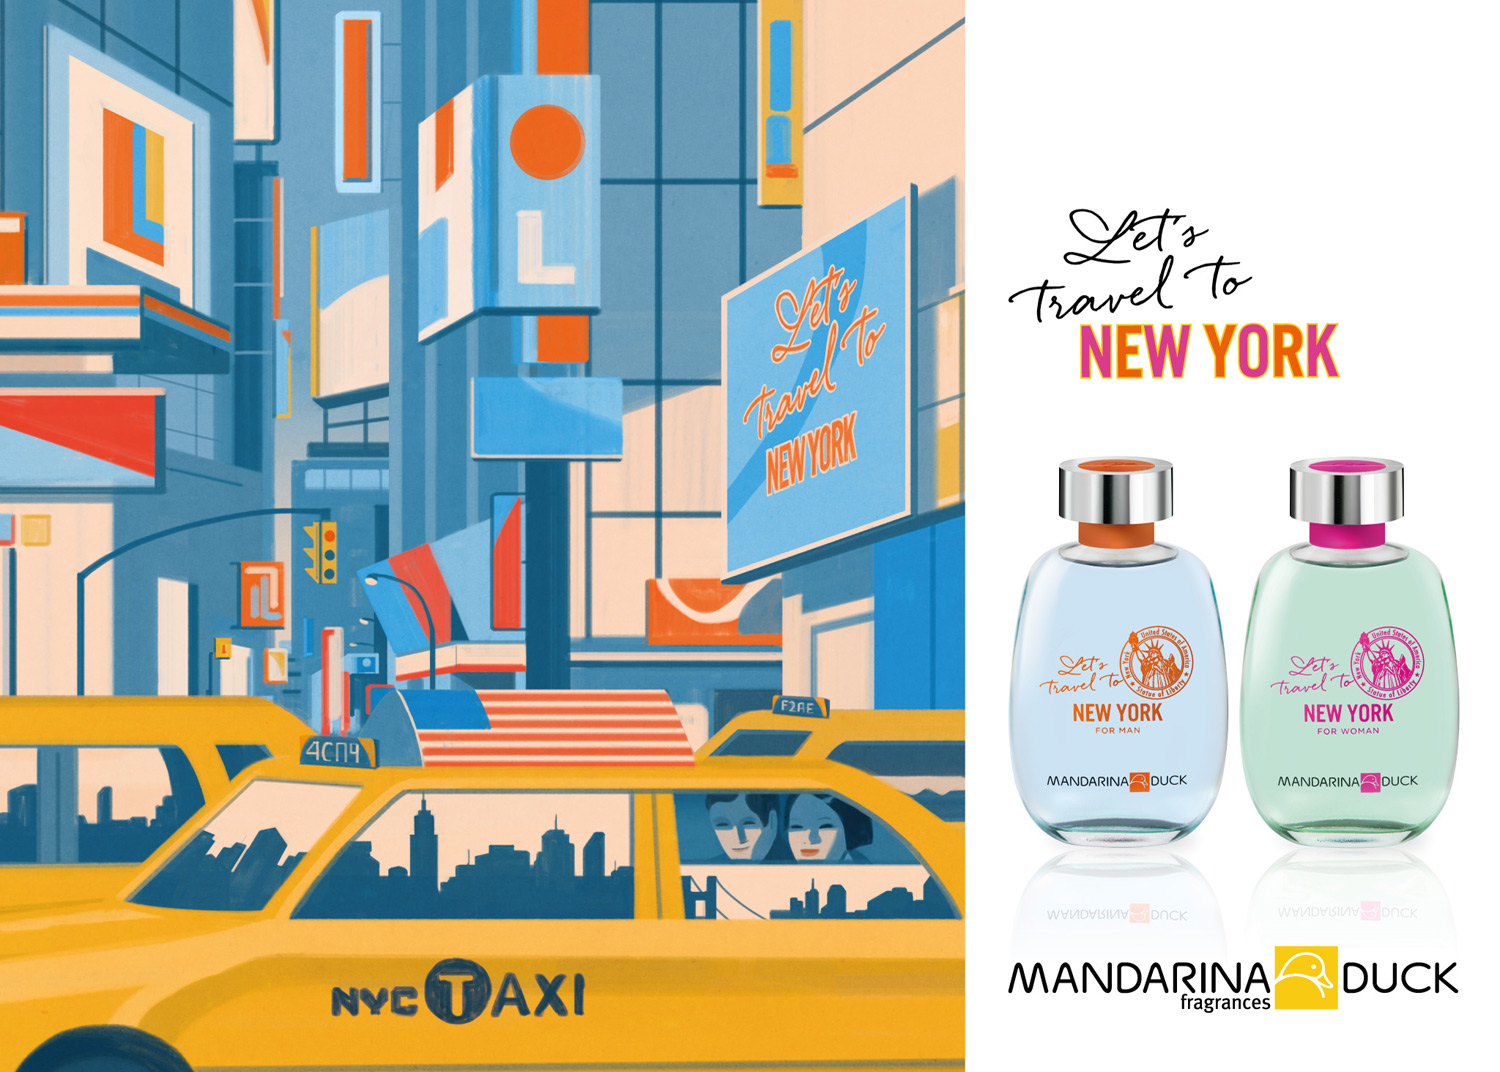 Mandarina Duck - New York